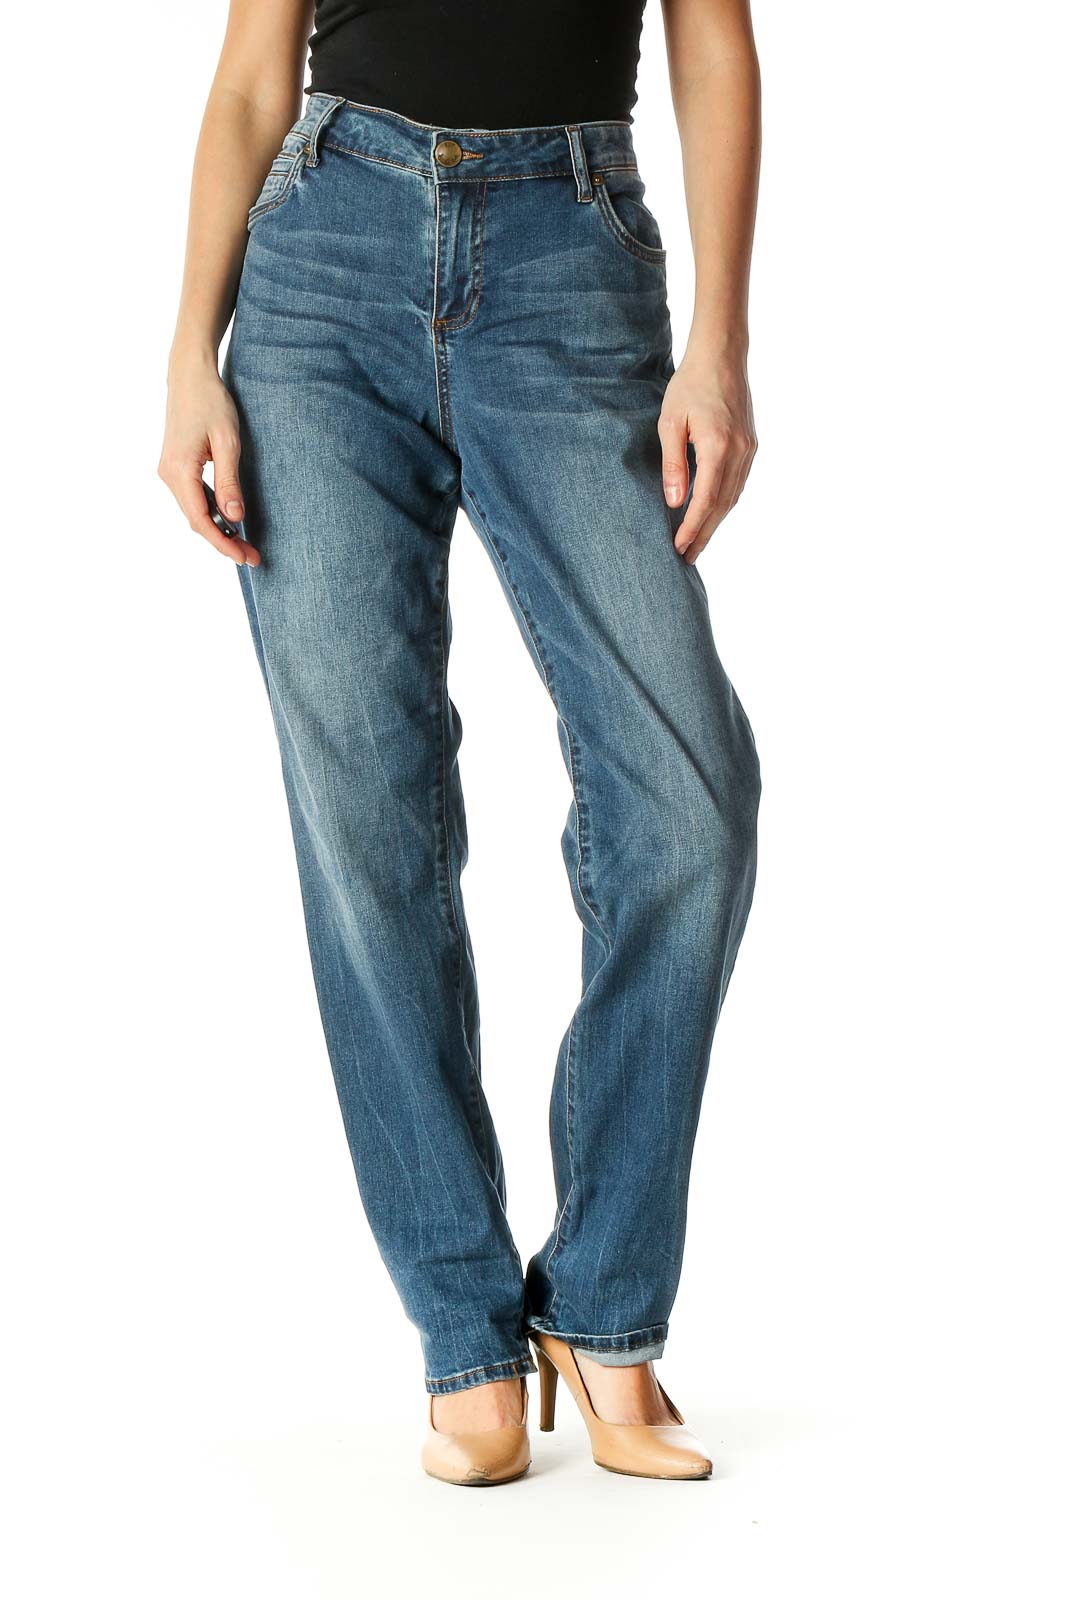 Blue Medium Wash Boyfriend Jeans Front